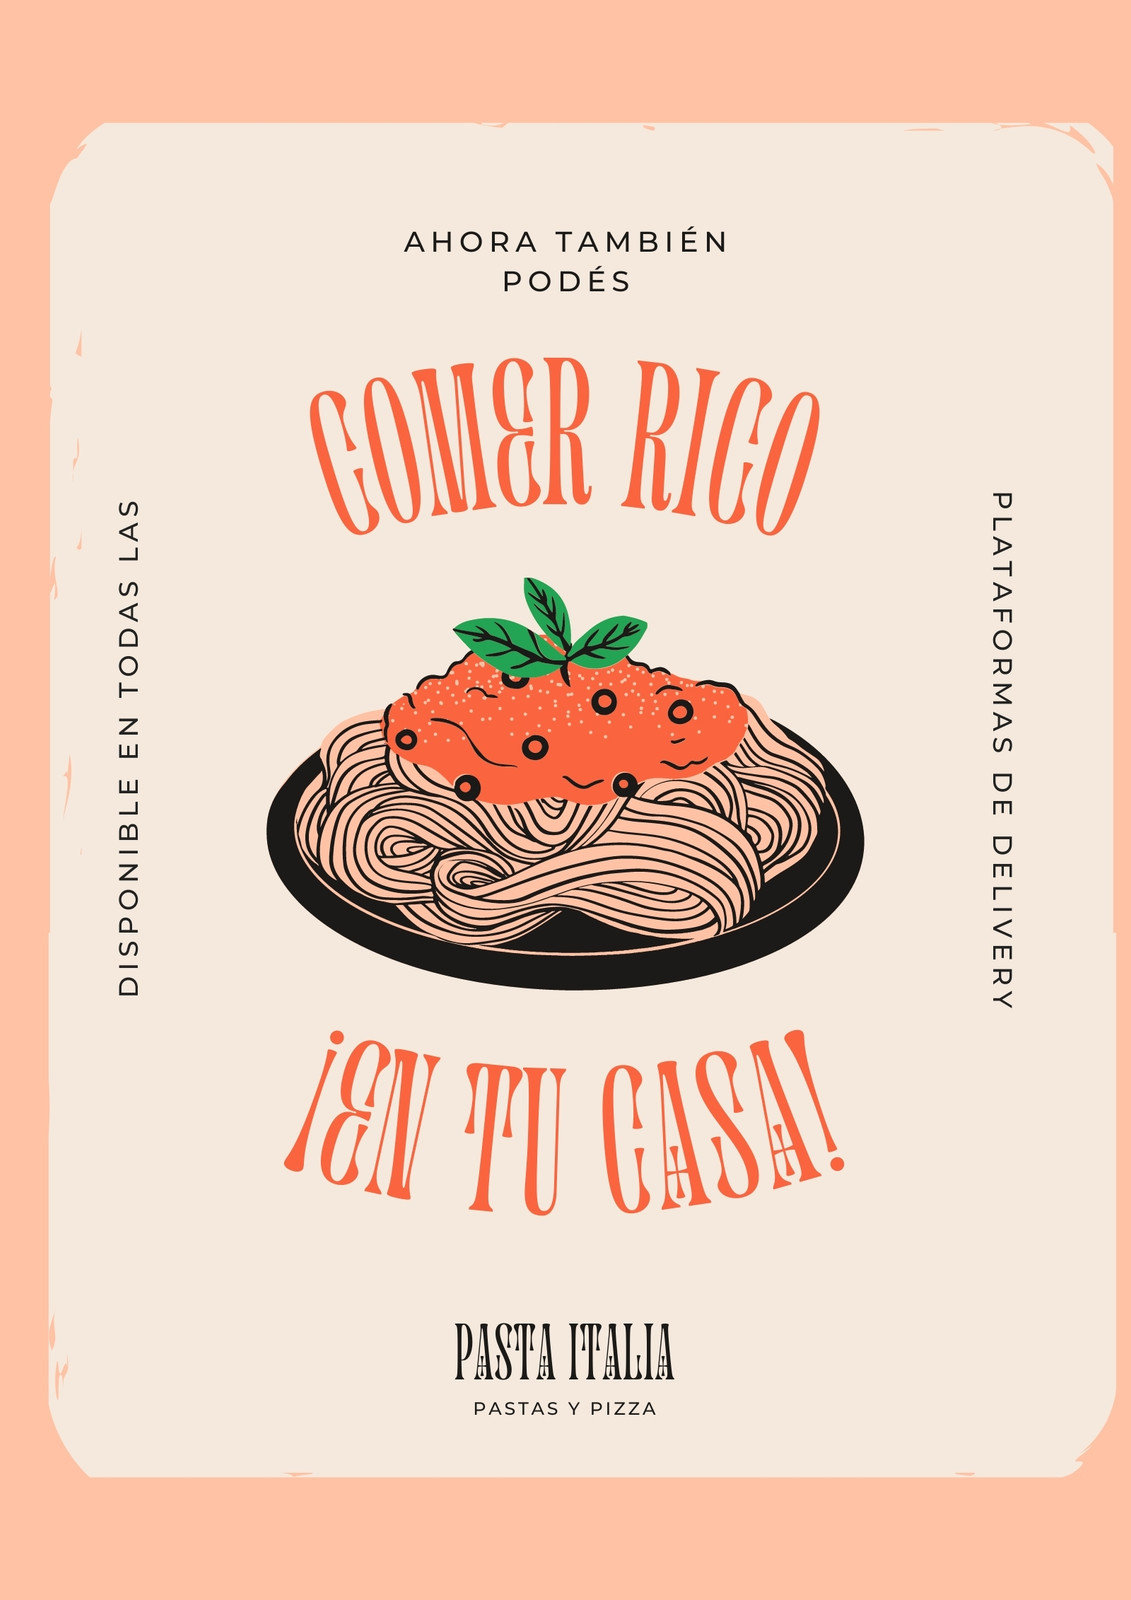 Flyer de diseño tradicional sobre anuncio servicio de delivery de pasta fresca, color durazno y naranja pastel con plato de pastas ilustrado